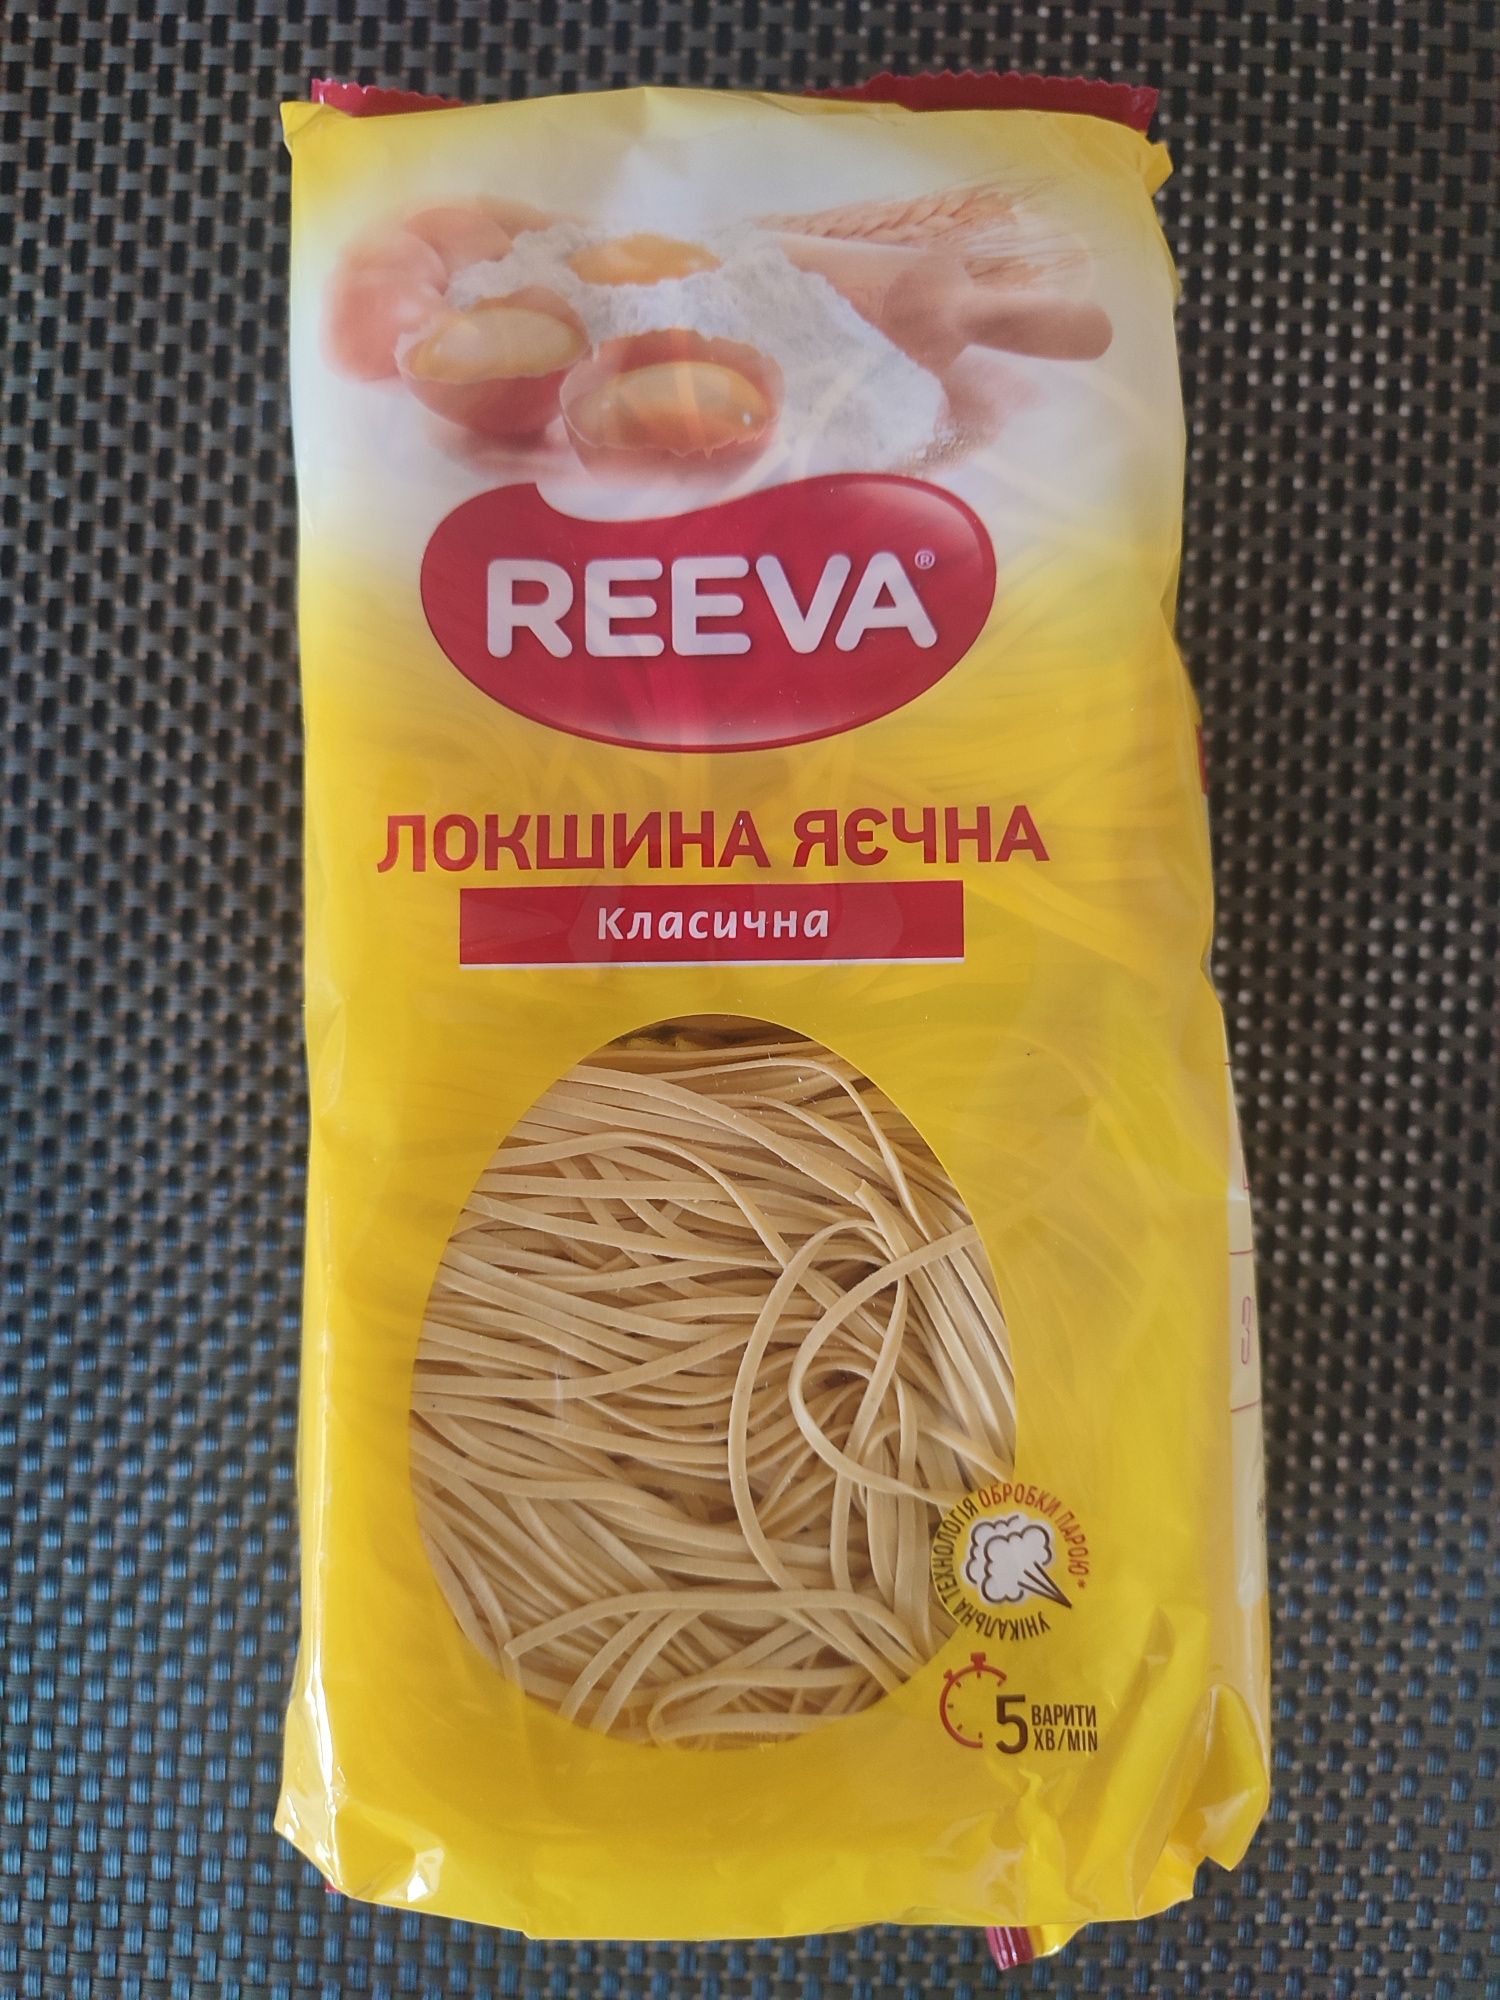 Яєчнасна локшина Reeva 400 грам.